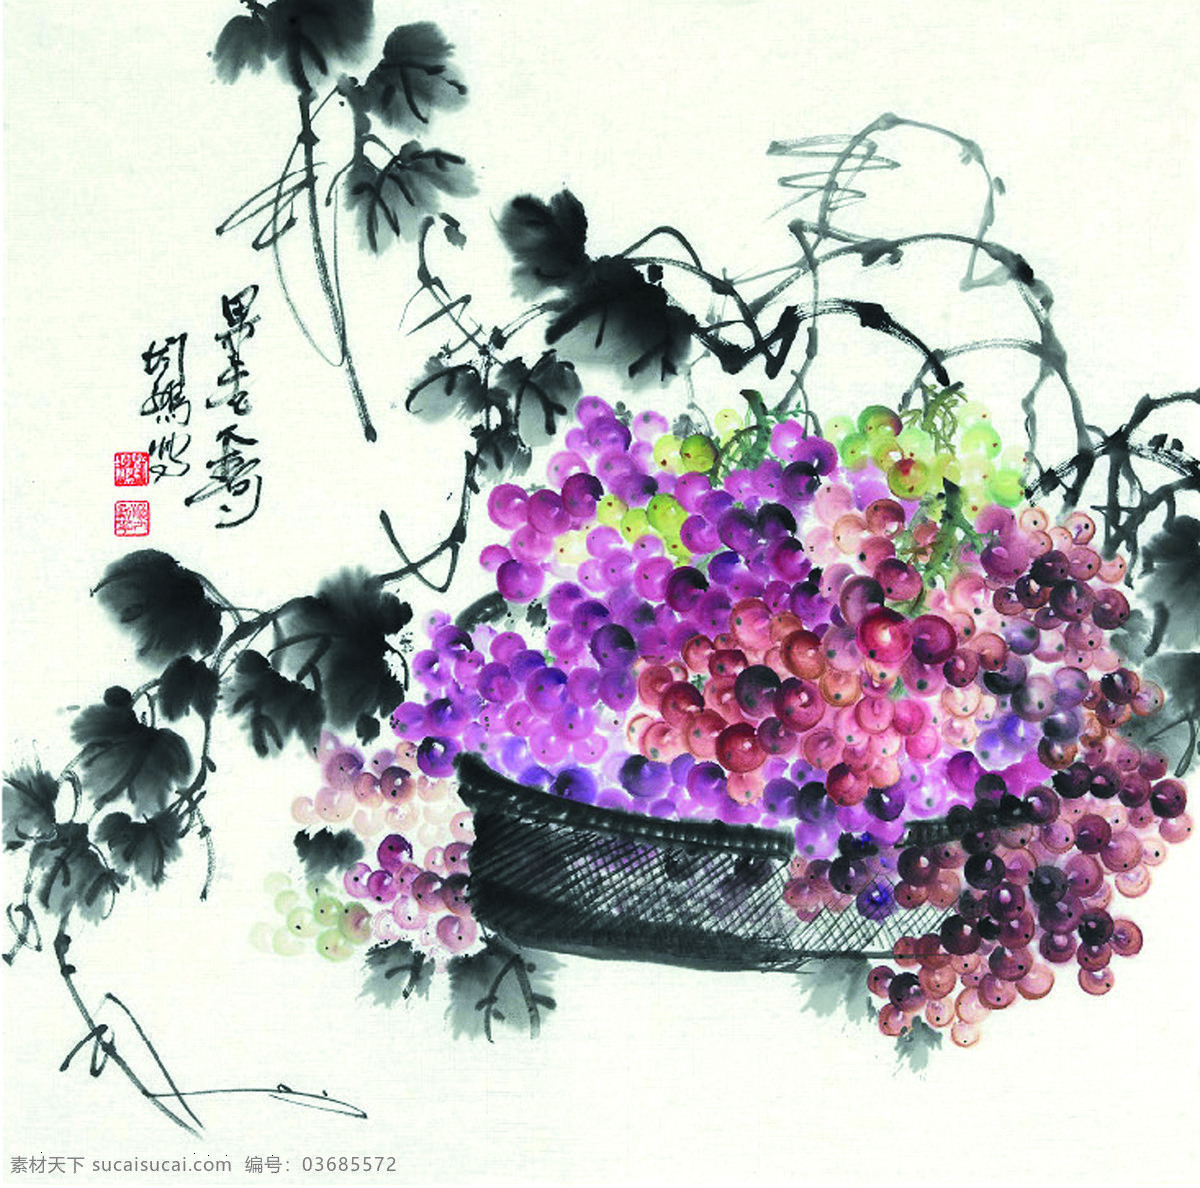 果香图 美术 中国画 彩墨画 果树 葡萄子 葡萄画 文化艺术 绘画书法